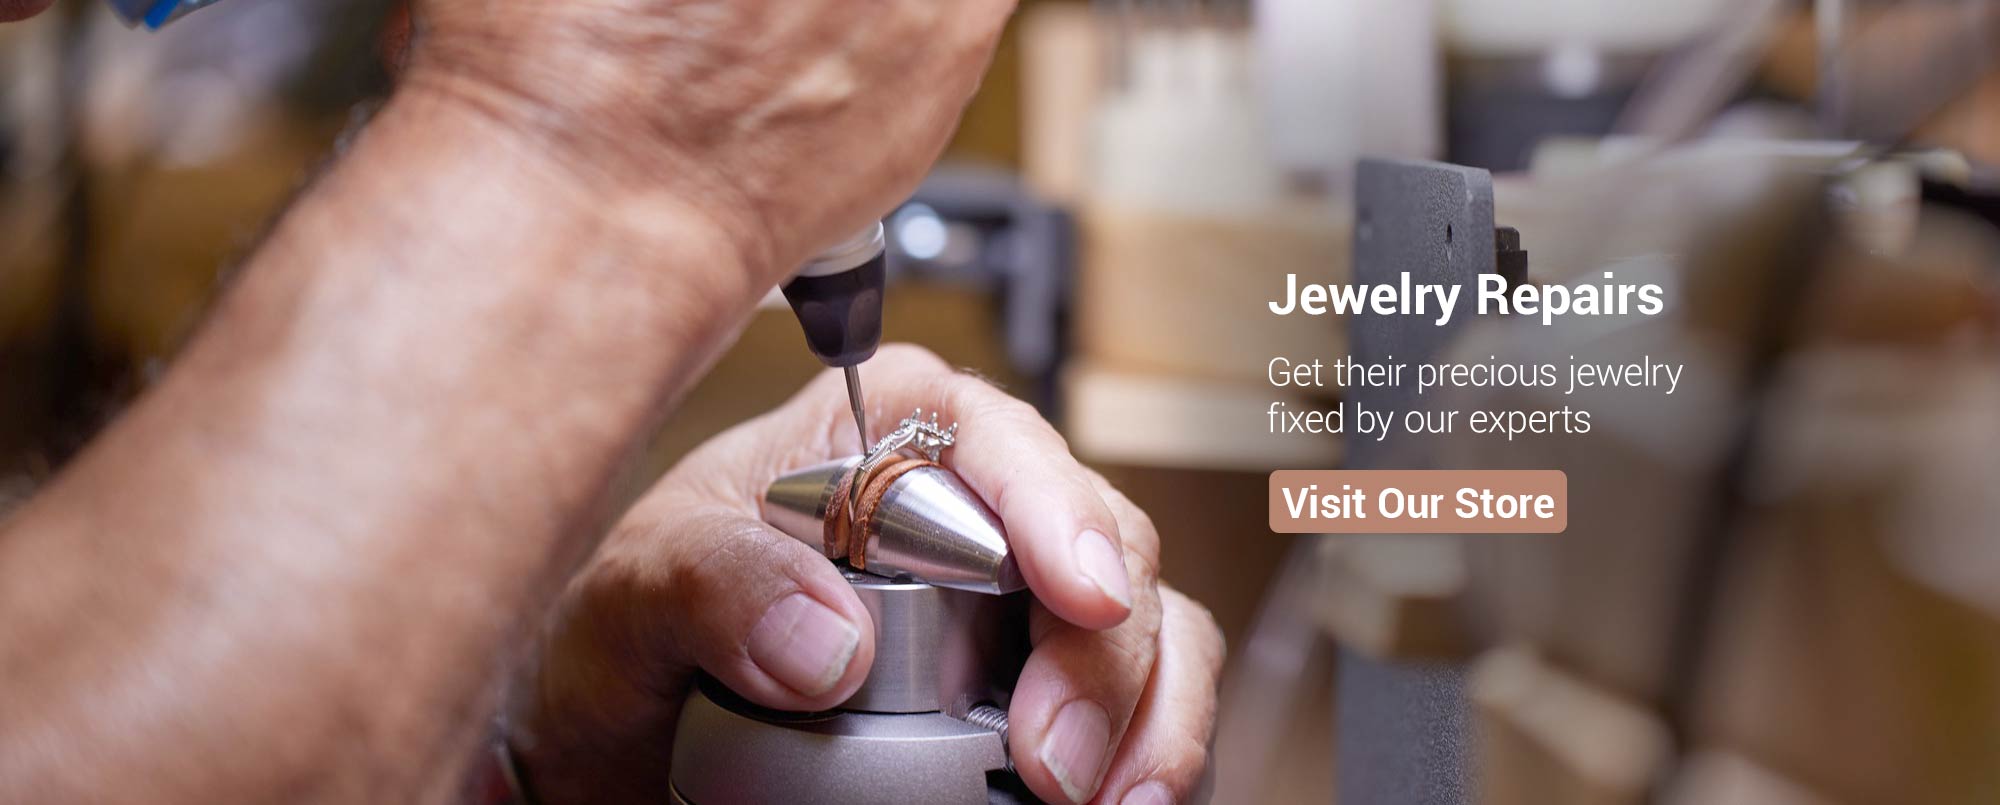 Jewelry Repairs At Hinz Jewelers